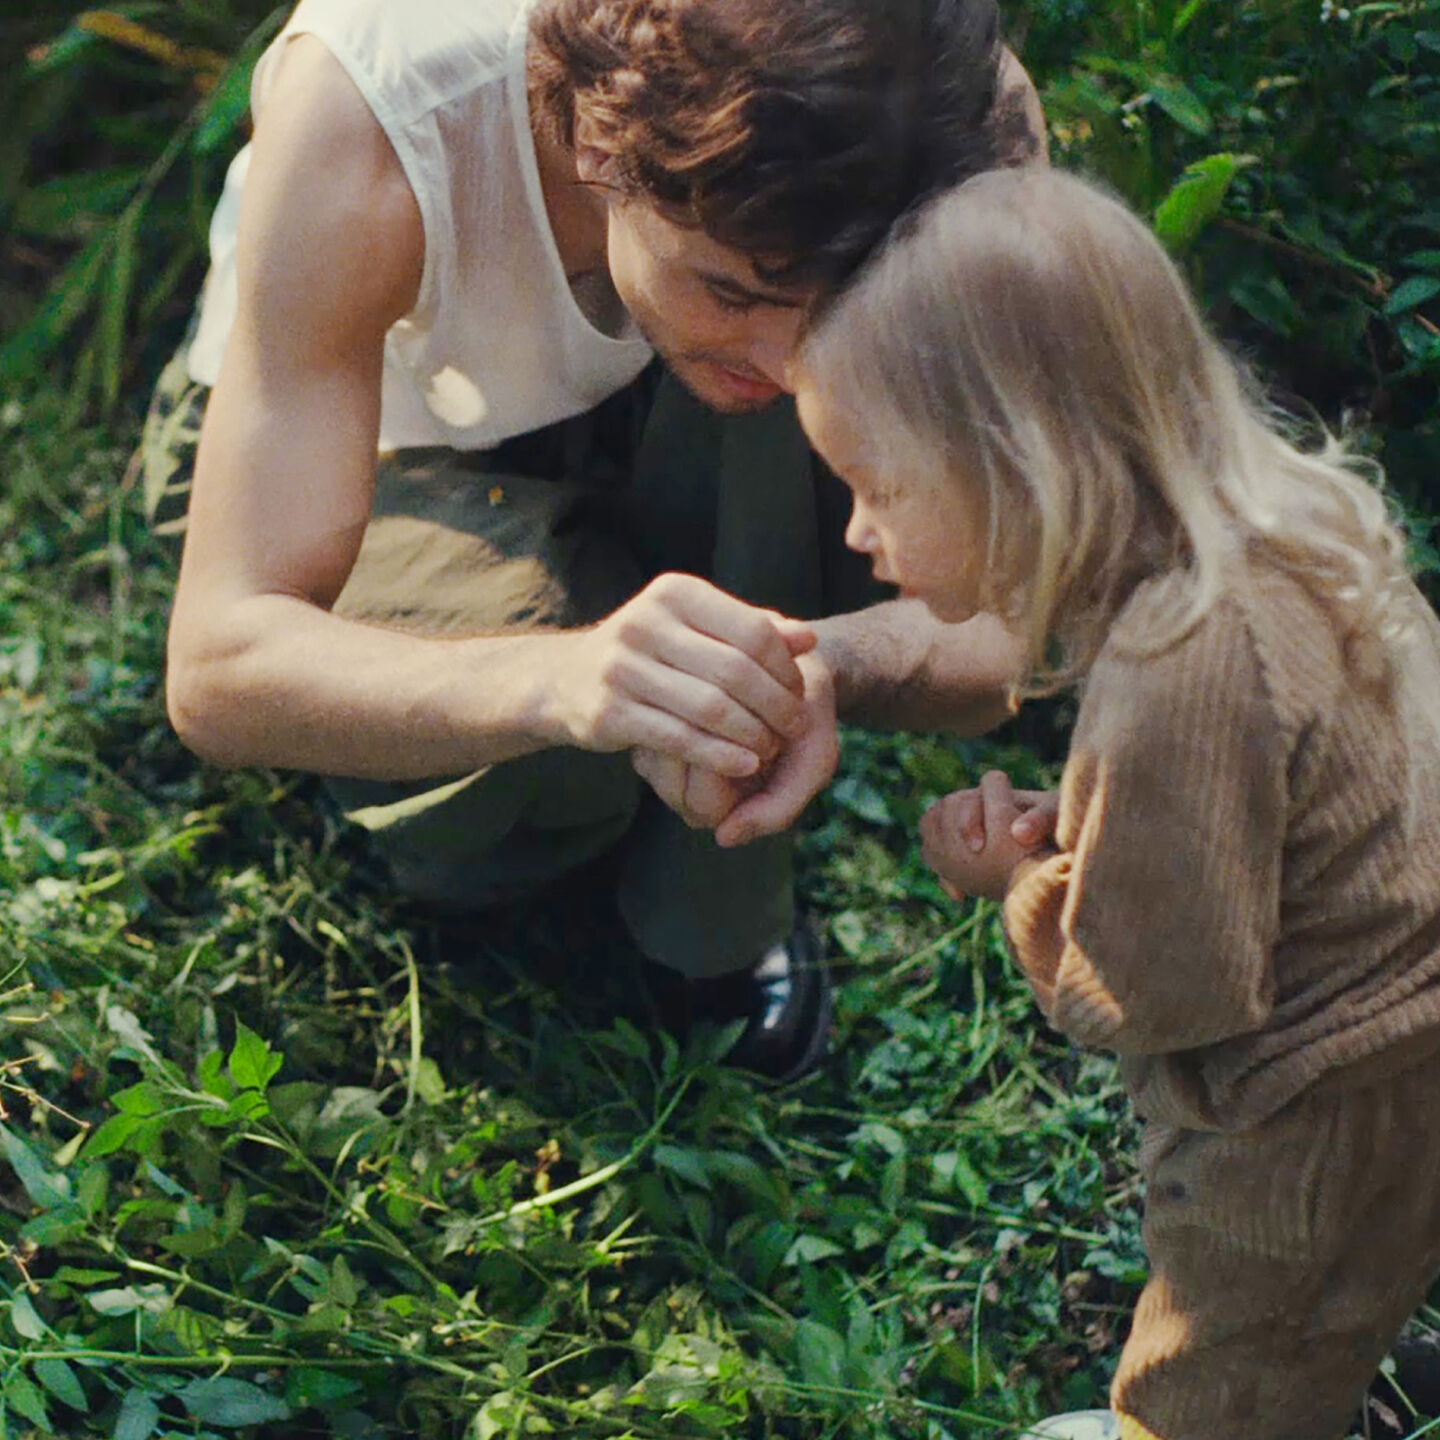 生い茂った未開の庭にしゃがみこむ父親と娘。 父親は、手の中にいる捕まえた何かを娘に見せている。